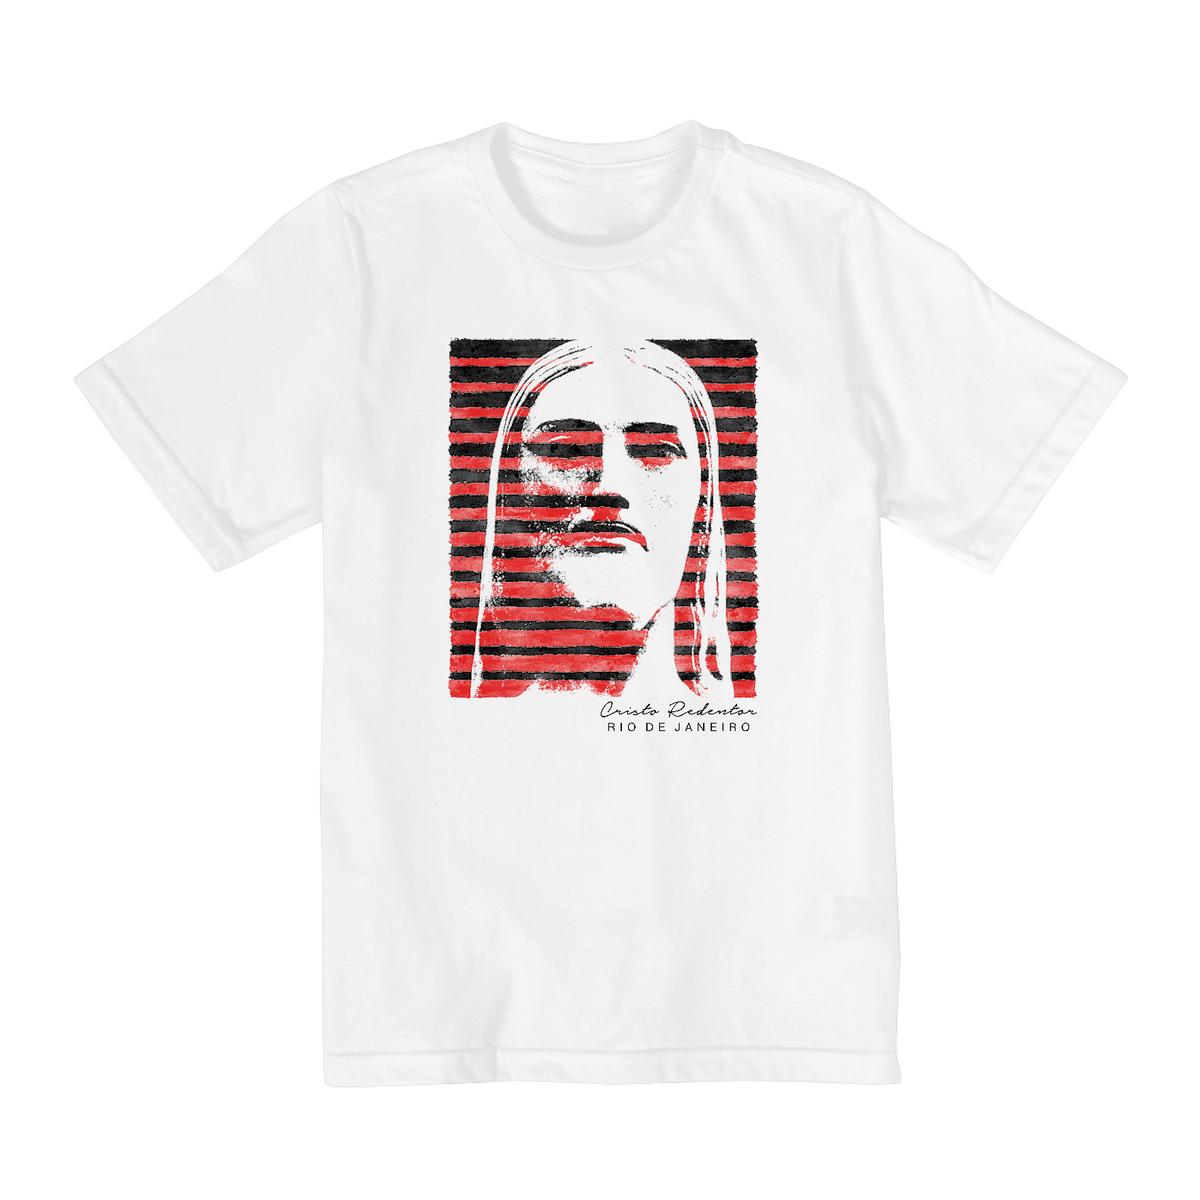 Nome do produto: Camiseta infantil Cristo Redentor